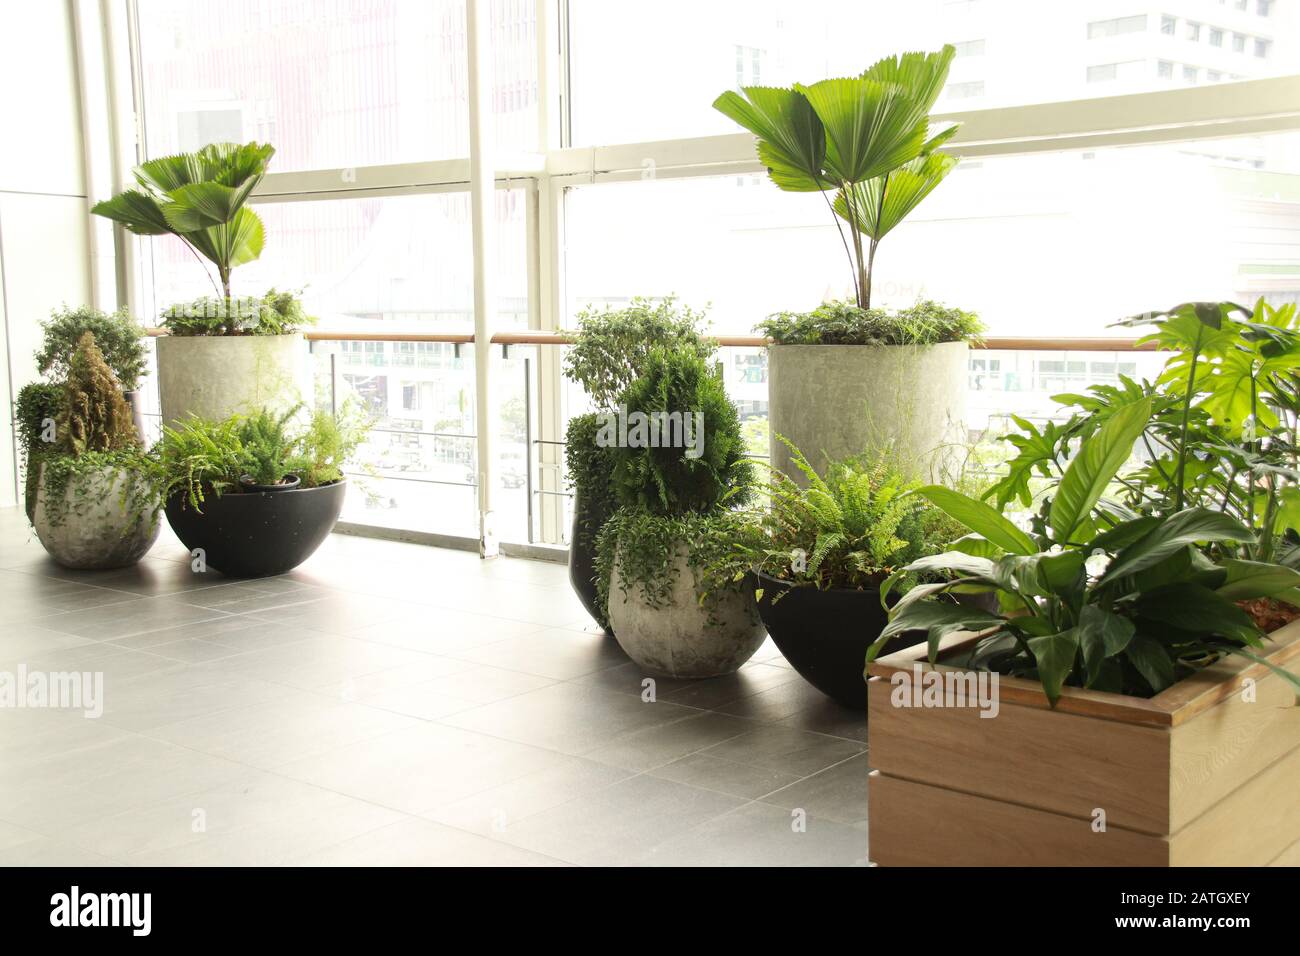 In Innenräumen schmücken Pflanzen den Arbeitsplatz, um einen ruhigen, geschlechtsneutralen und gesunden Arbeitsraum zu fördern Stockfoto